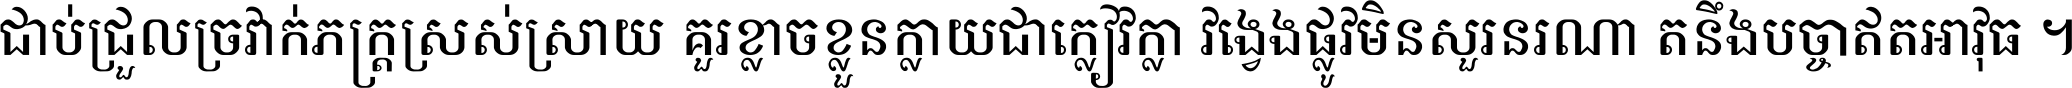 Kh Ang KanTout